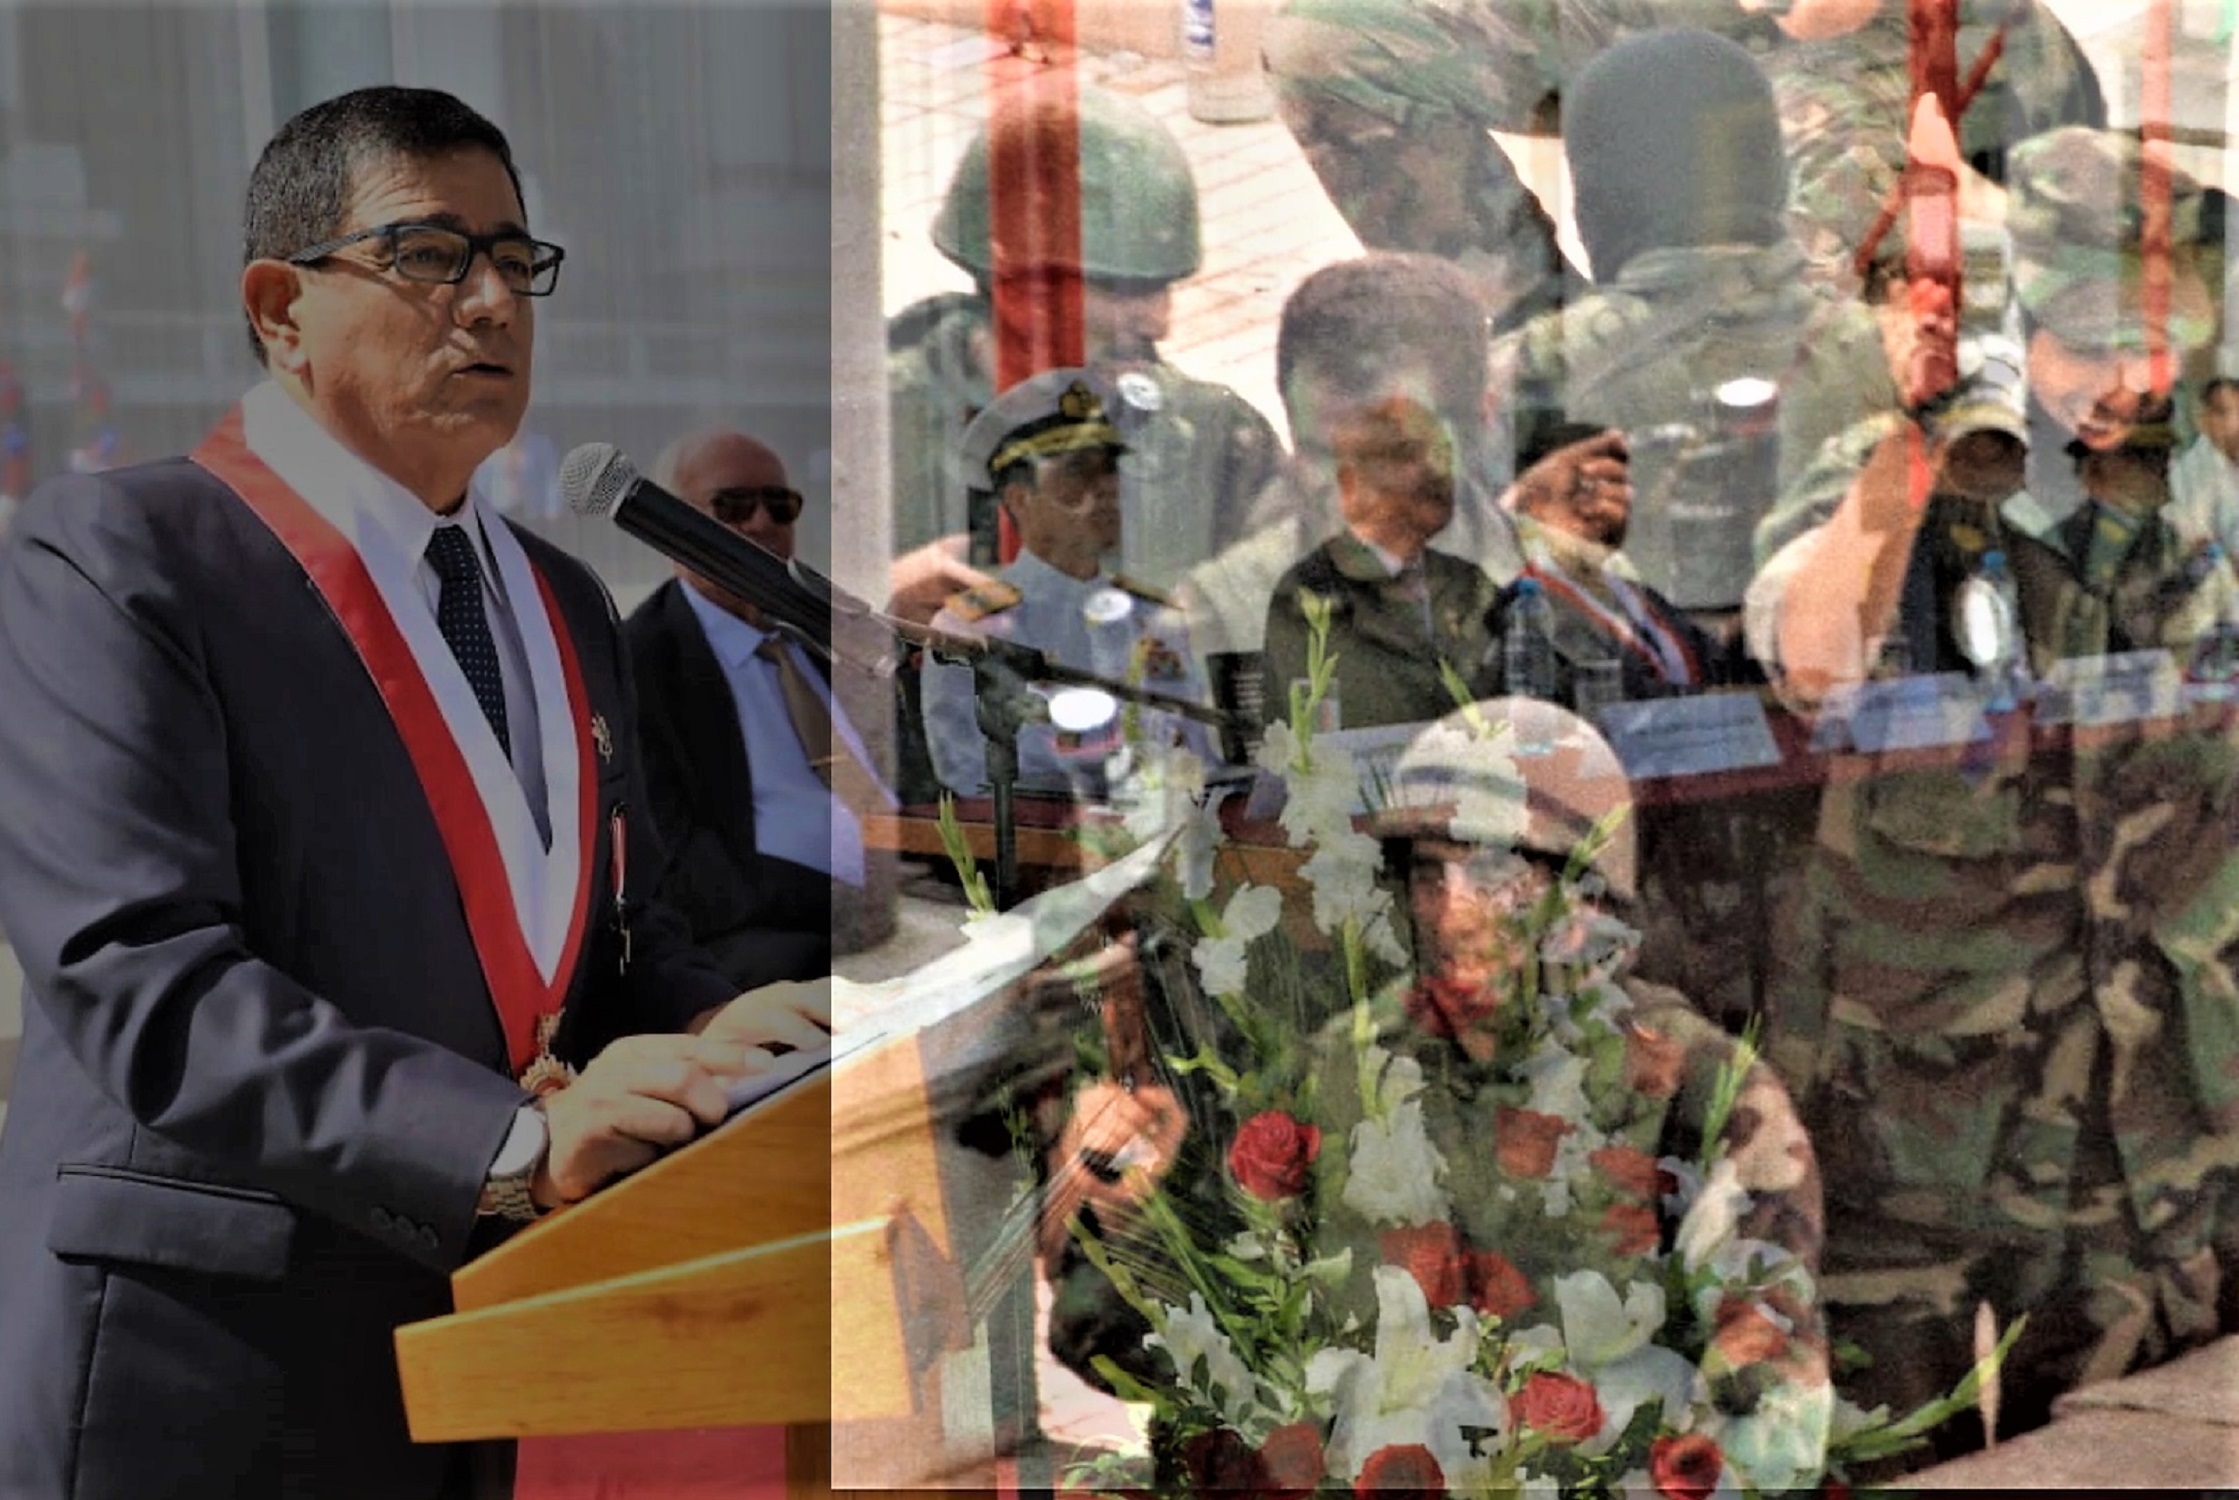 Congreso homenajea a héroes de la democracia, al cumplirse el 26 aniversario del exitoso operativo militar "Chavín de Huántar".